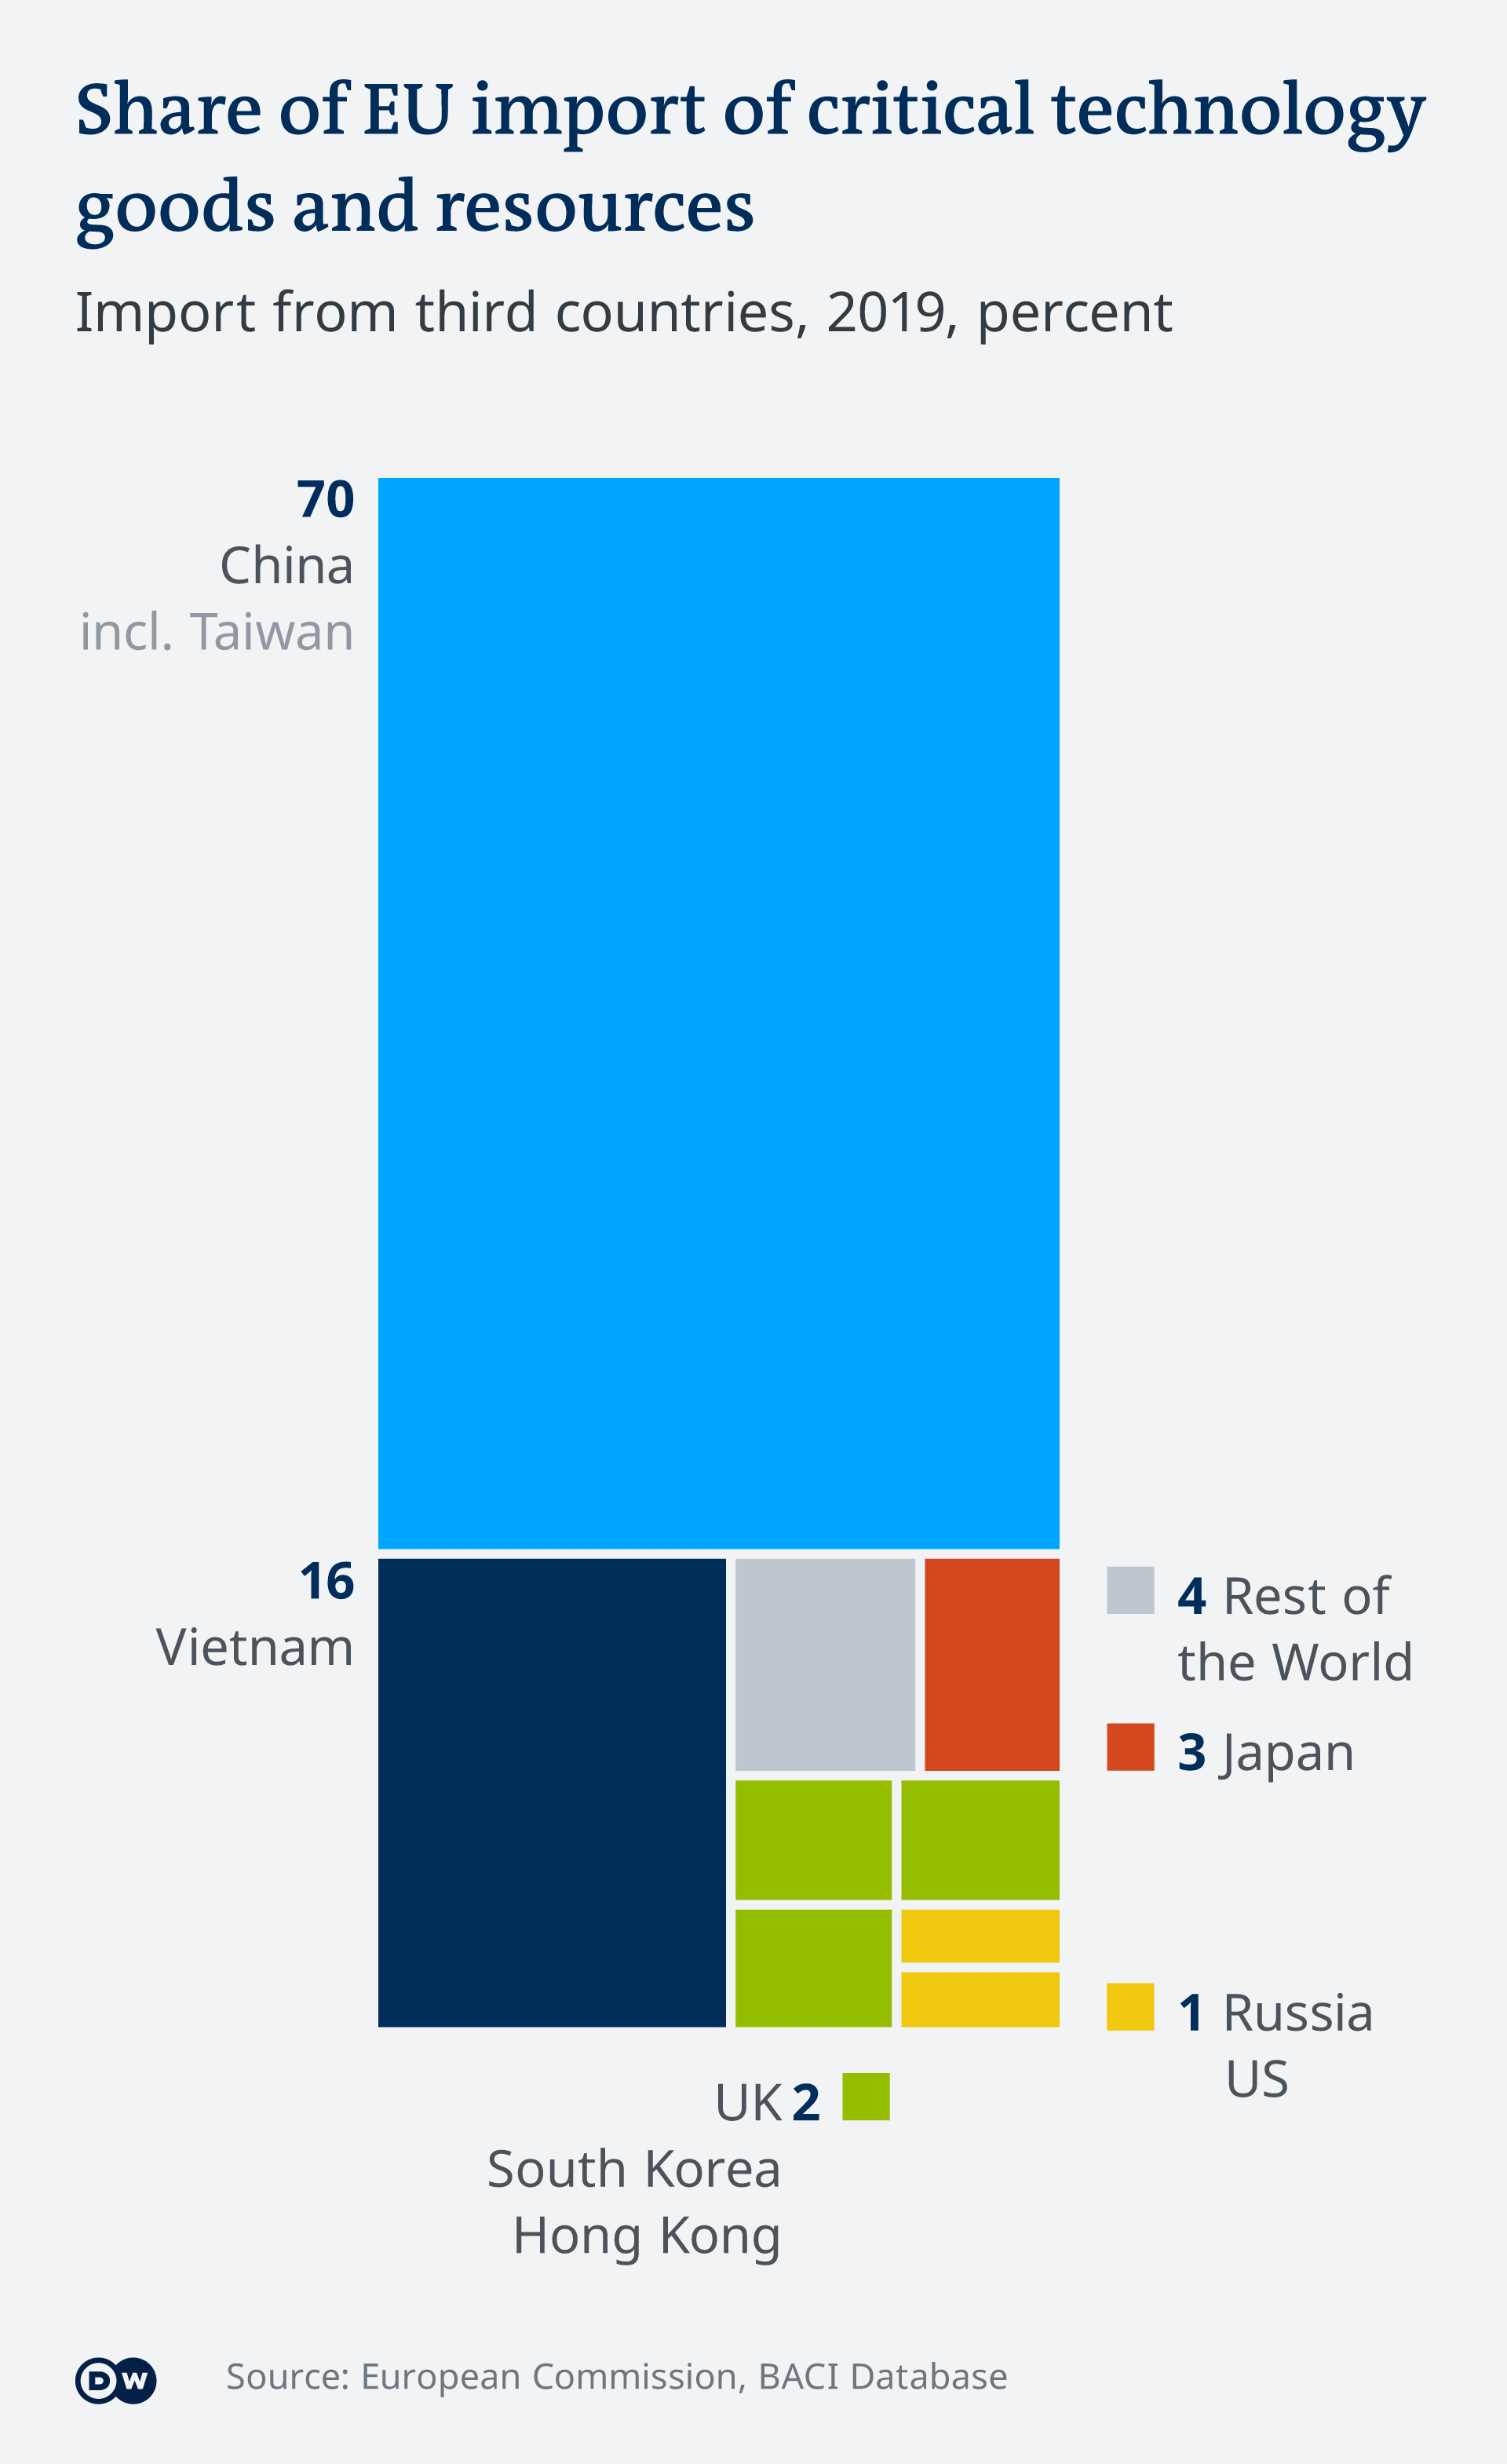 Biểu đồ cho thấy châu Âu nhập khẩu các thiết bị công nghệ quan trọng từ Việt Nam chỉ chiếm 16%.